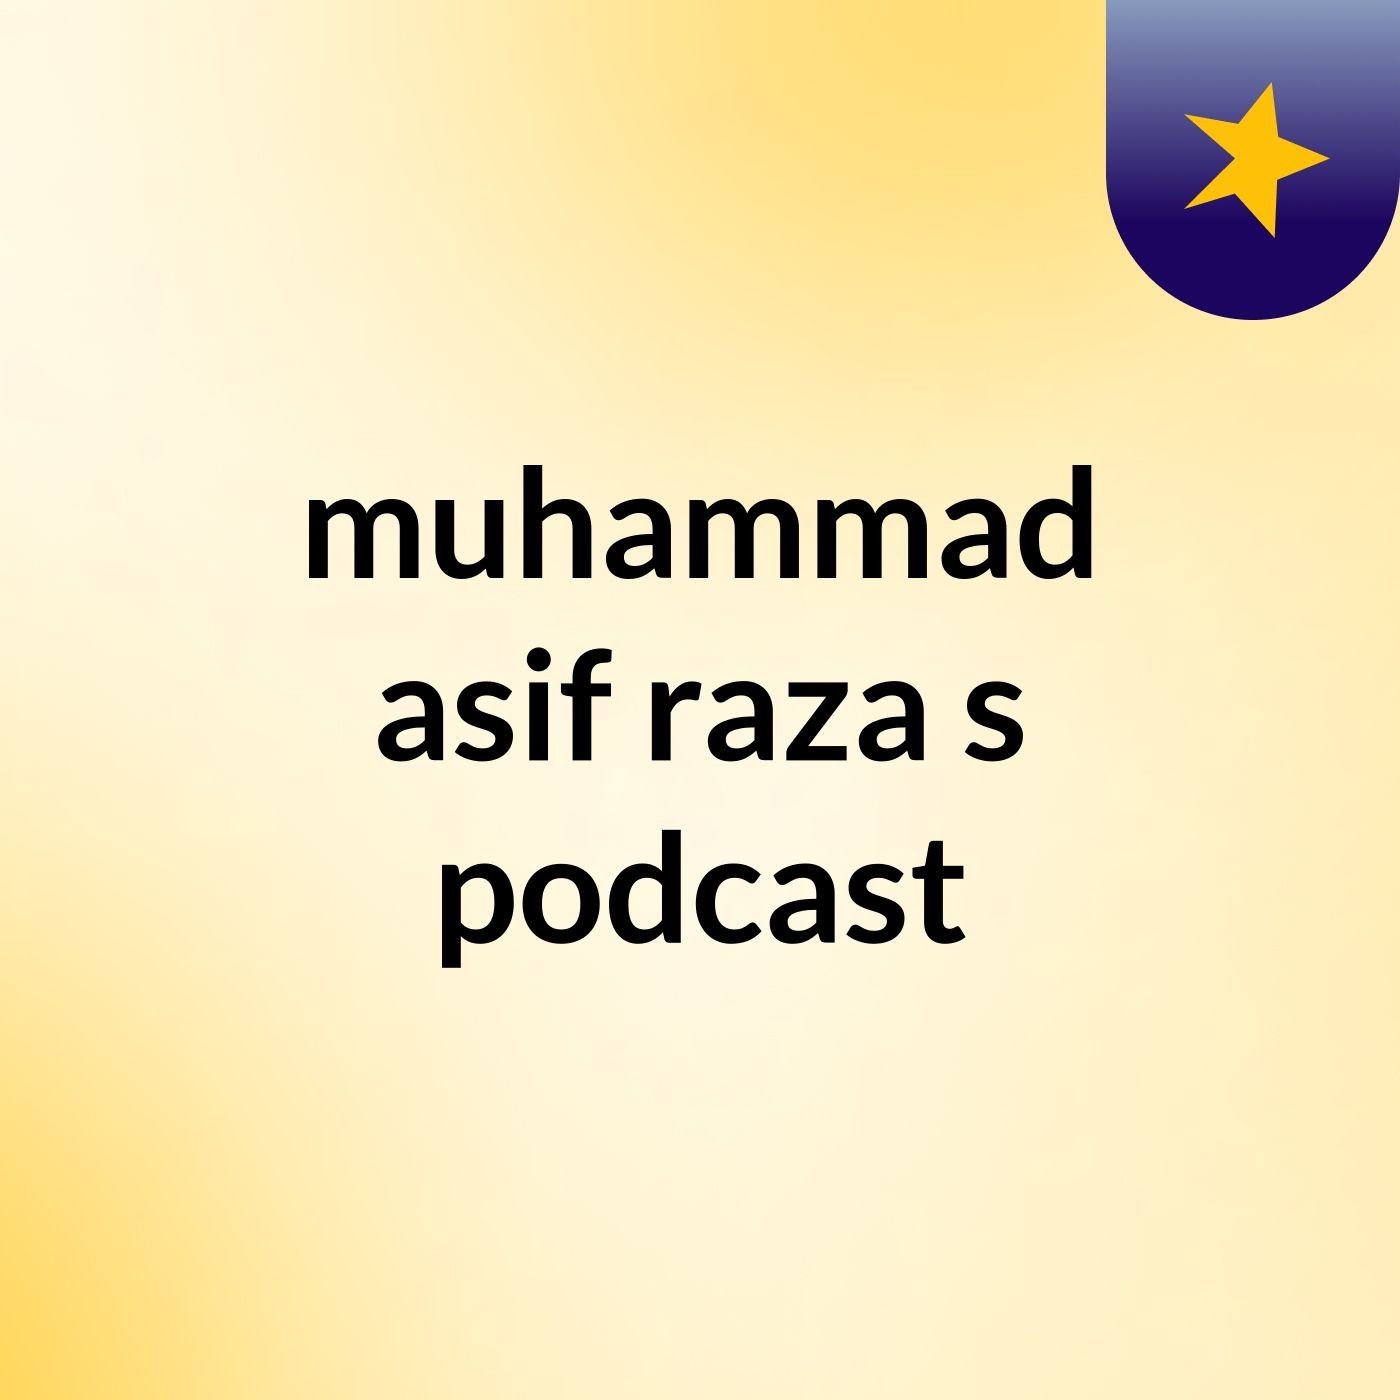 Episode 2 - muhammad asif raza's podcast